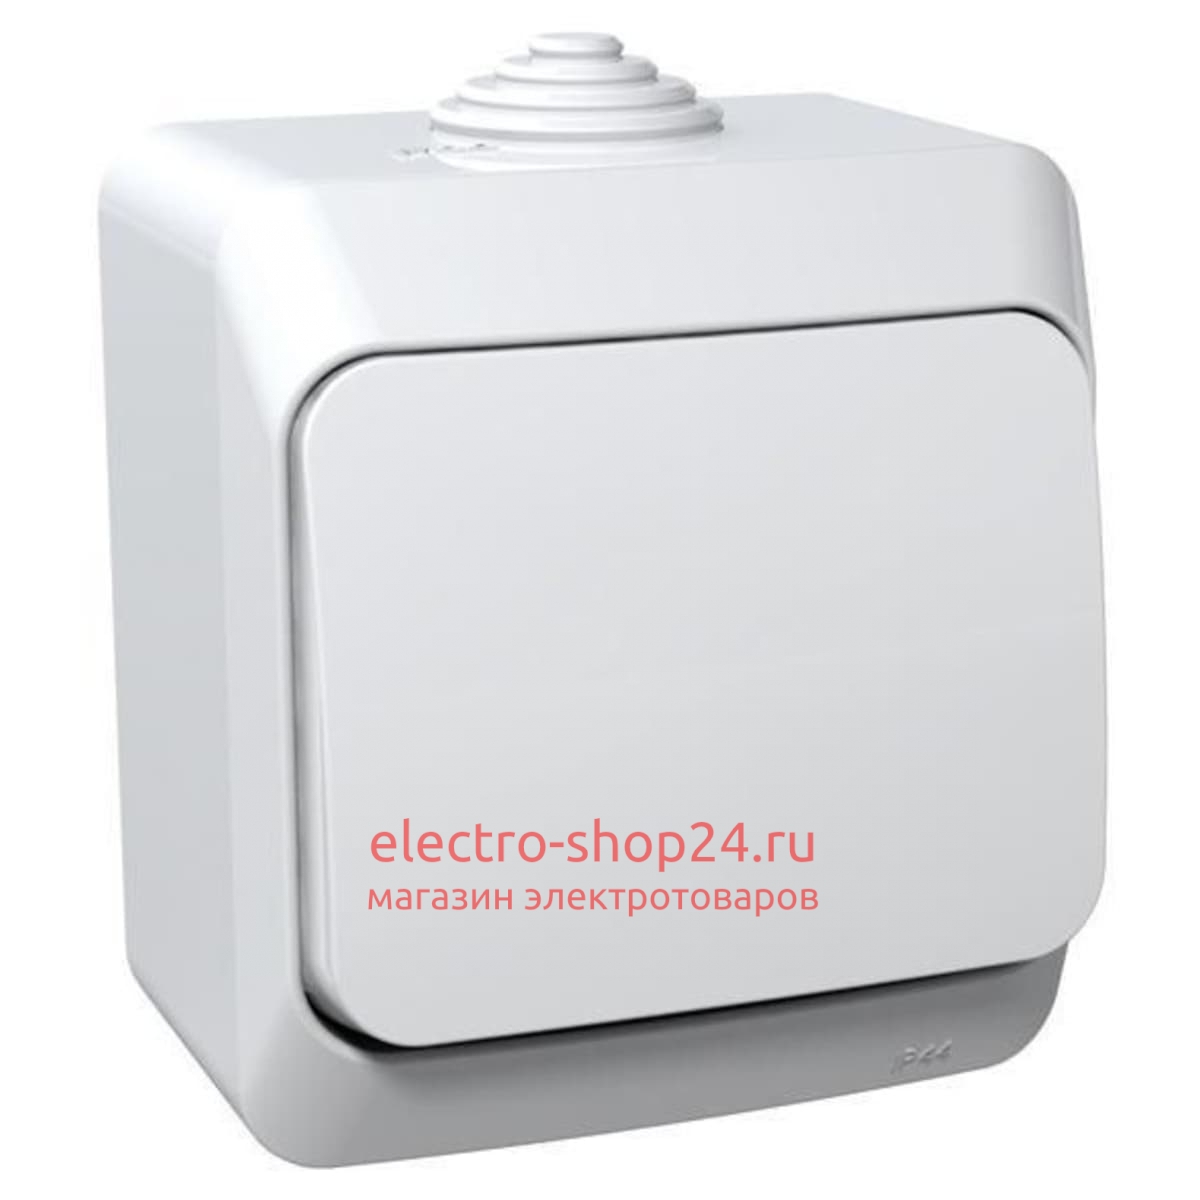 Выключатель одноклавишный Этюд IP44 Schneider Electric белый BA10-041B - магазин электротехники Electroshop